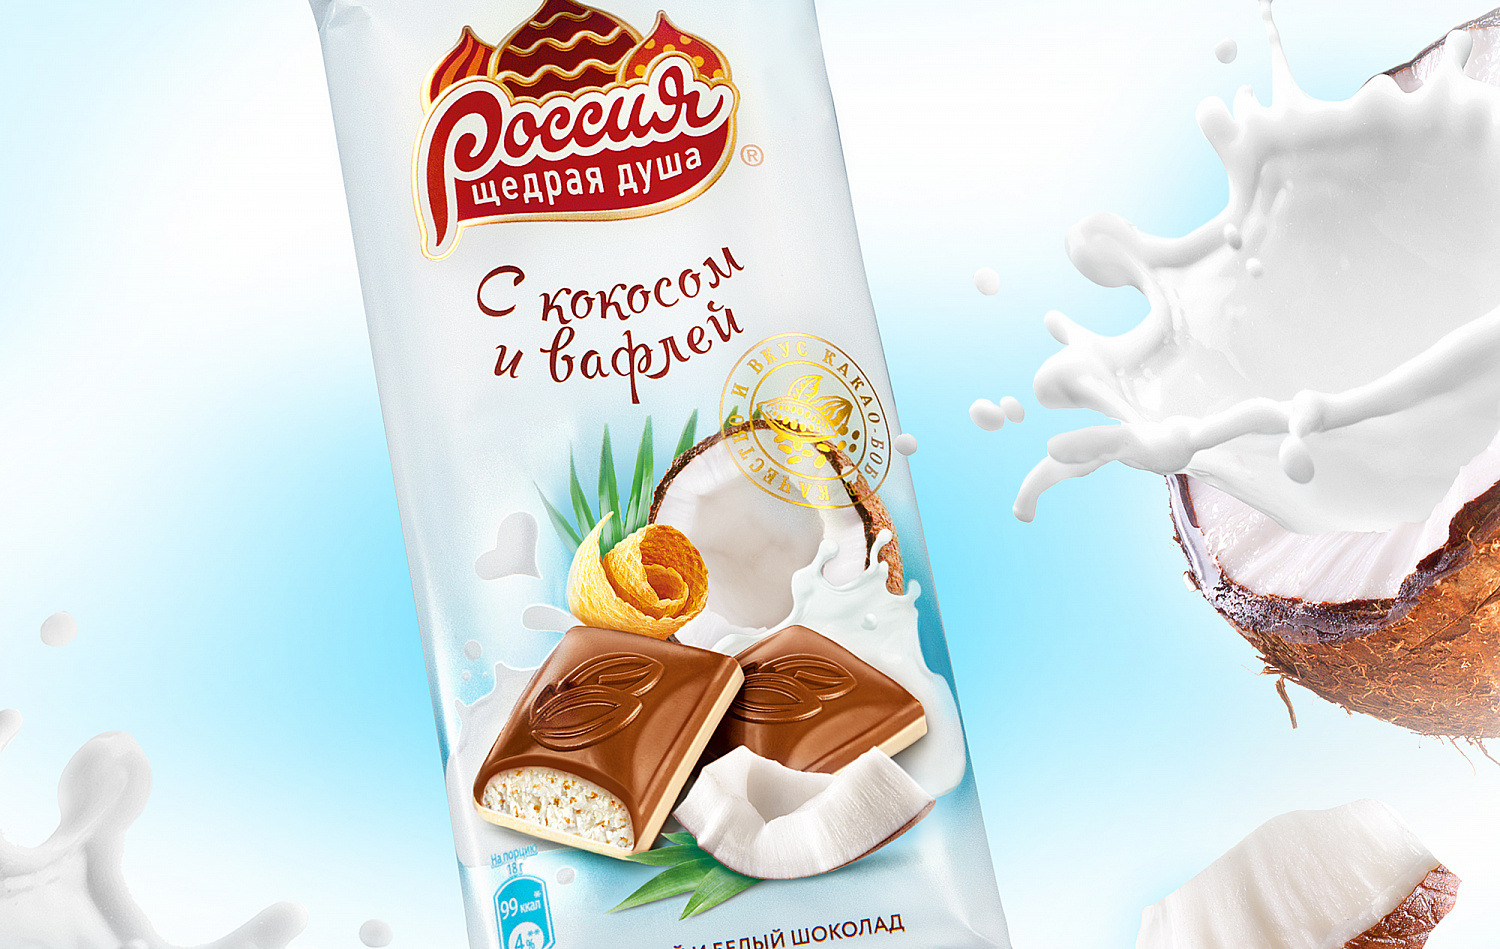 «Россия» – Щедрая Душа!® с кокосом и вафлей - Портфолио Depot